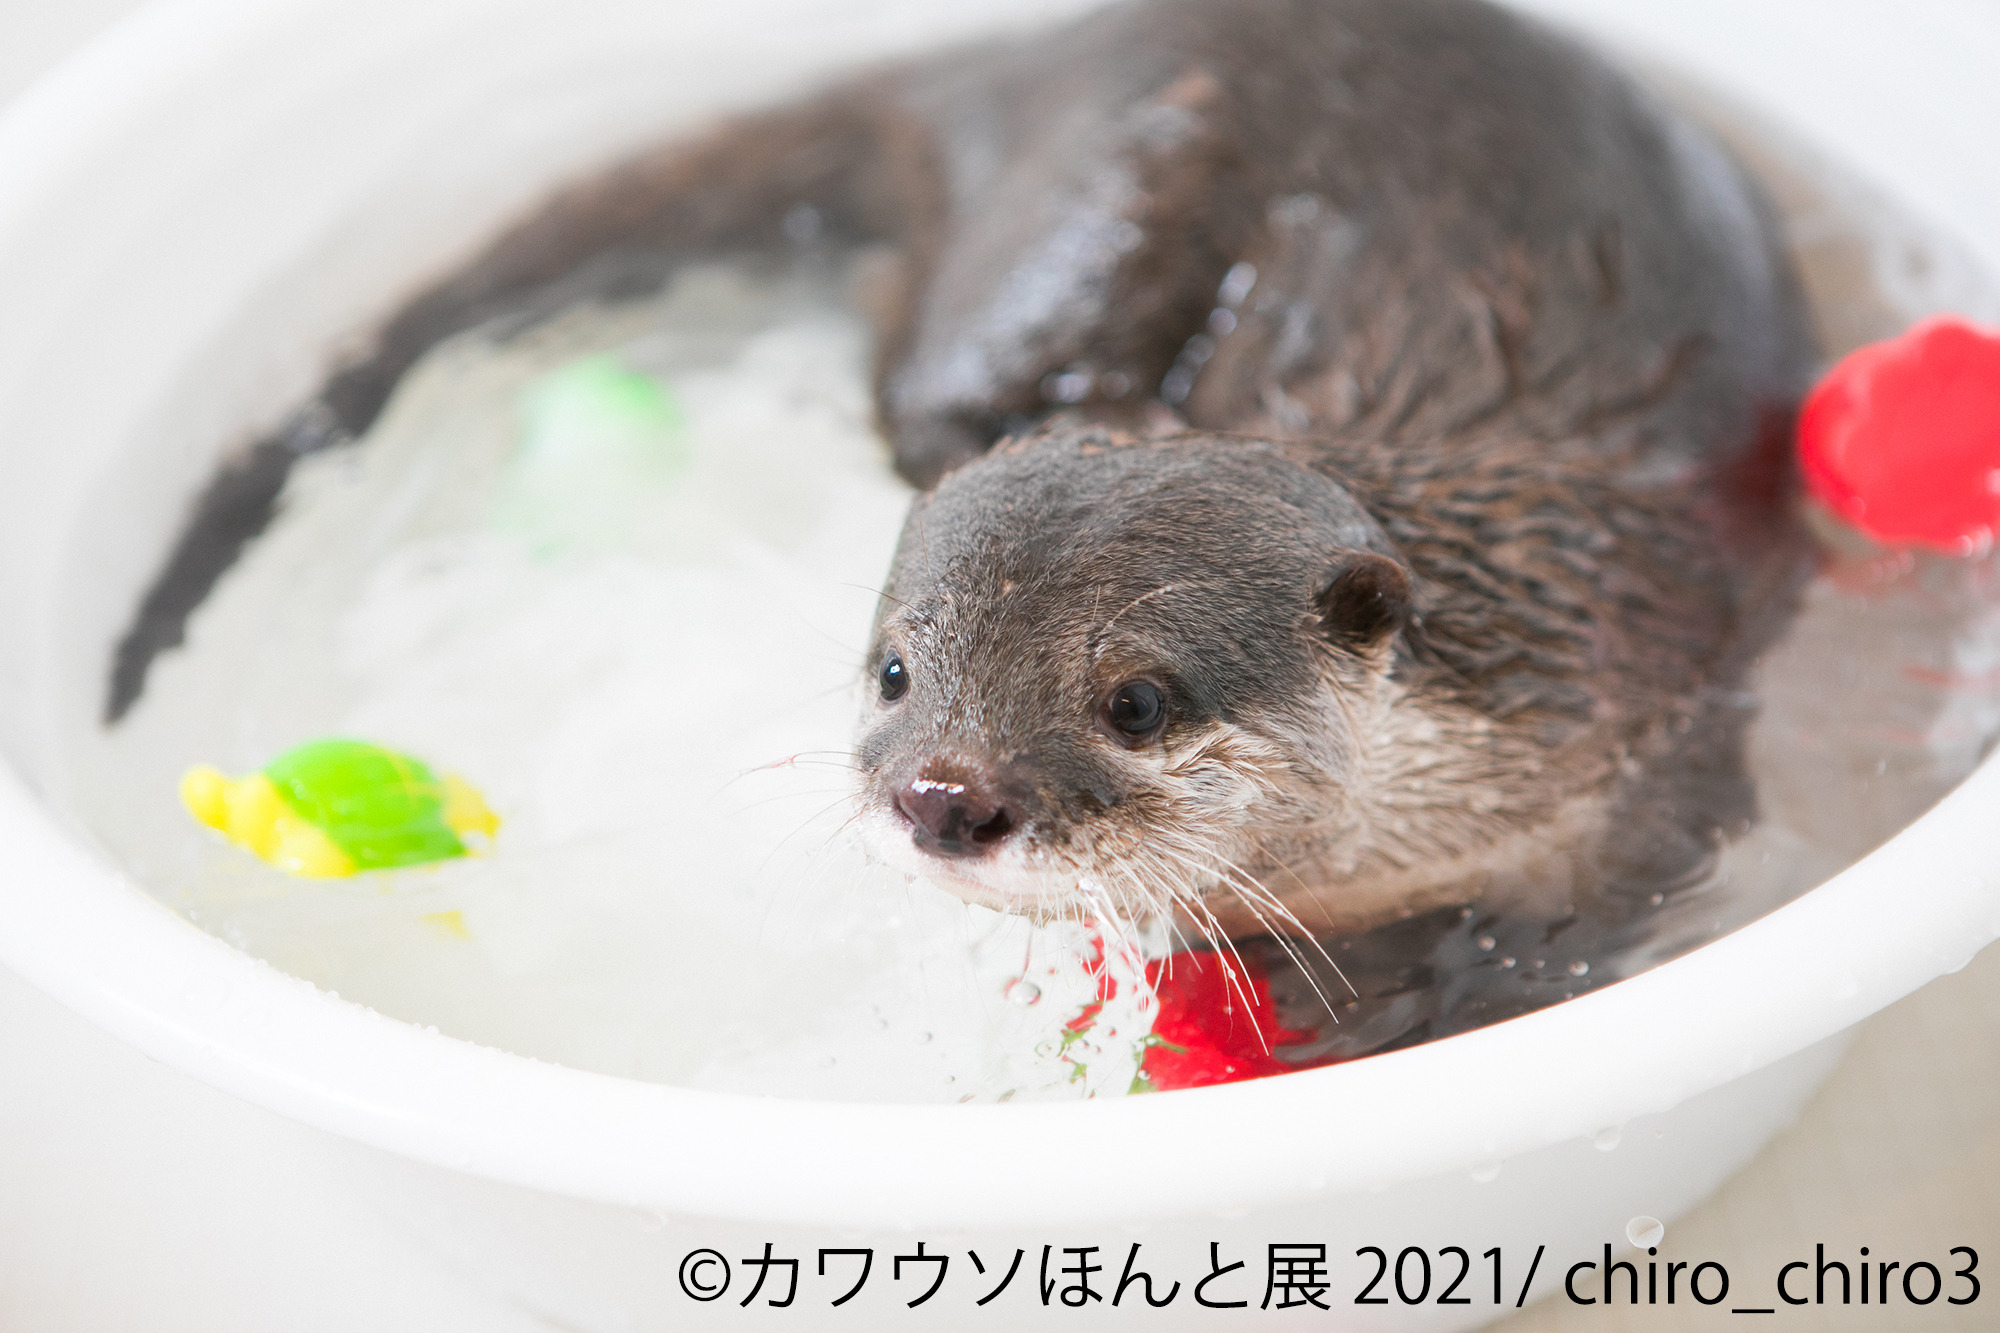 カワウソの合同写真展 物販展 カワウソほんと展 21 3年ぶりに東京にて開催 5月28日 6月日 動物のリアルを伝えるwebメディア Reanimal